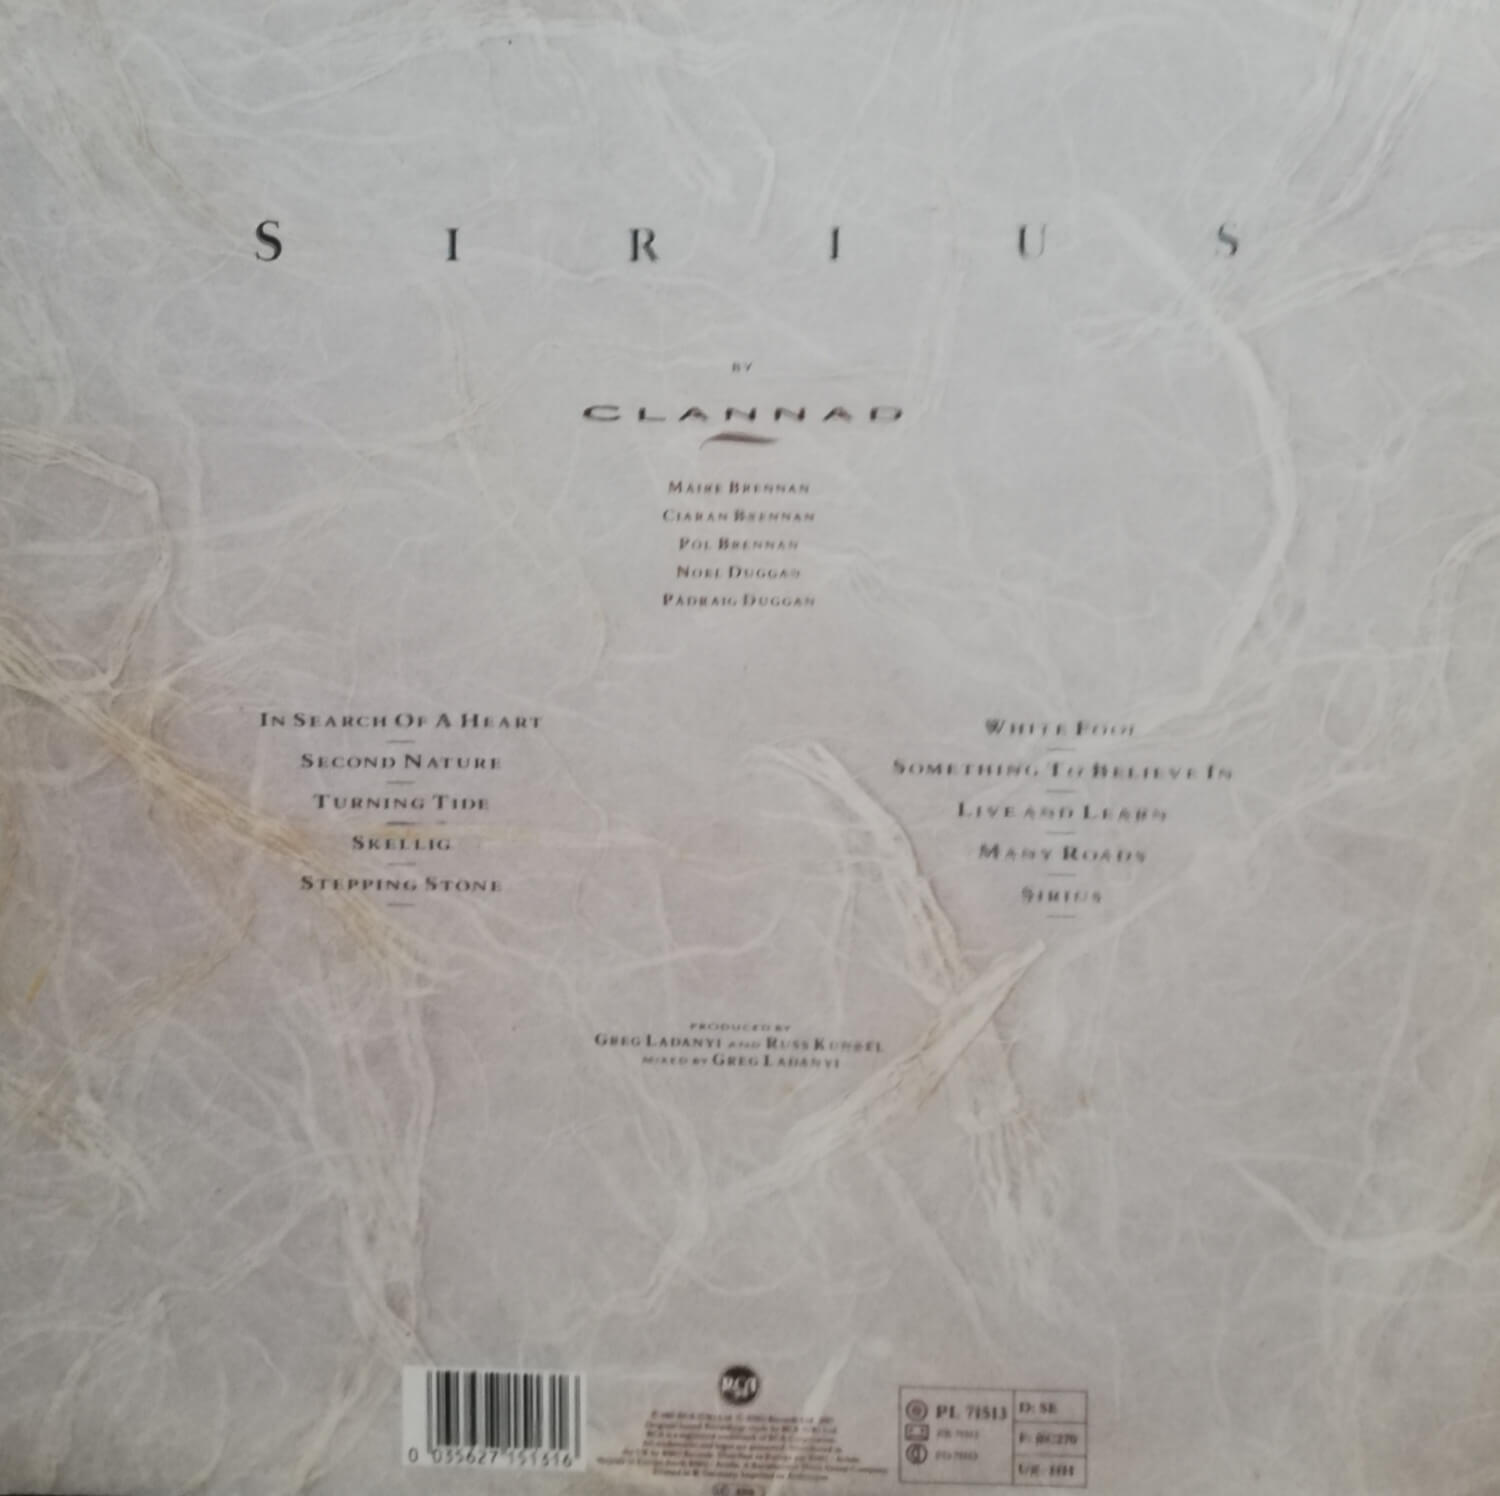 Okładka płyty winylowej artysty Clannad o tytule Sirius